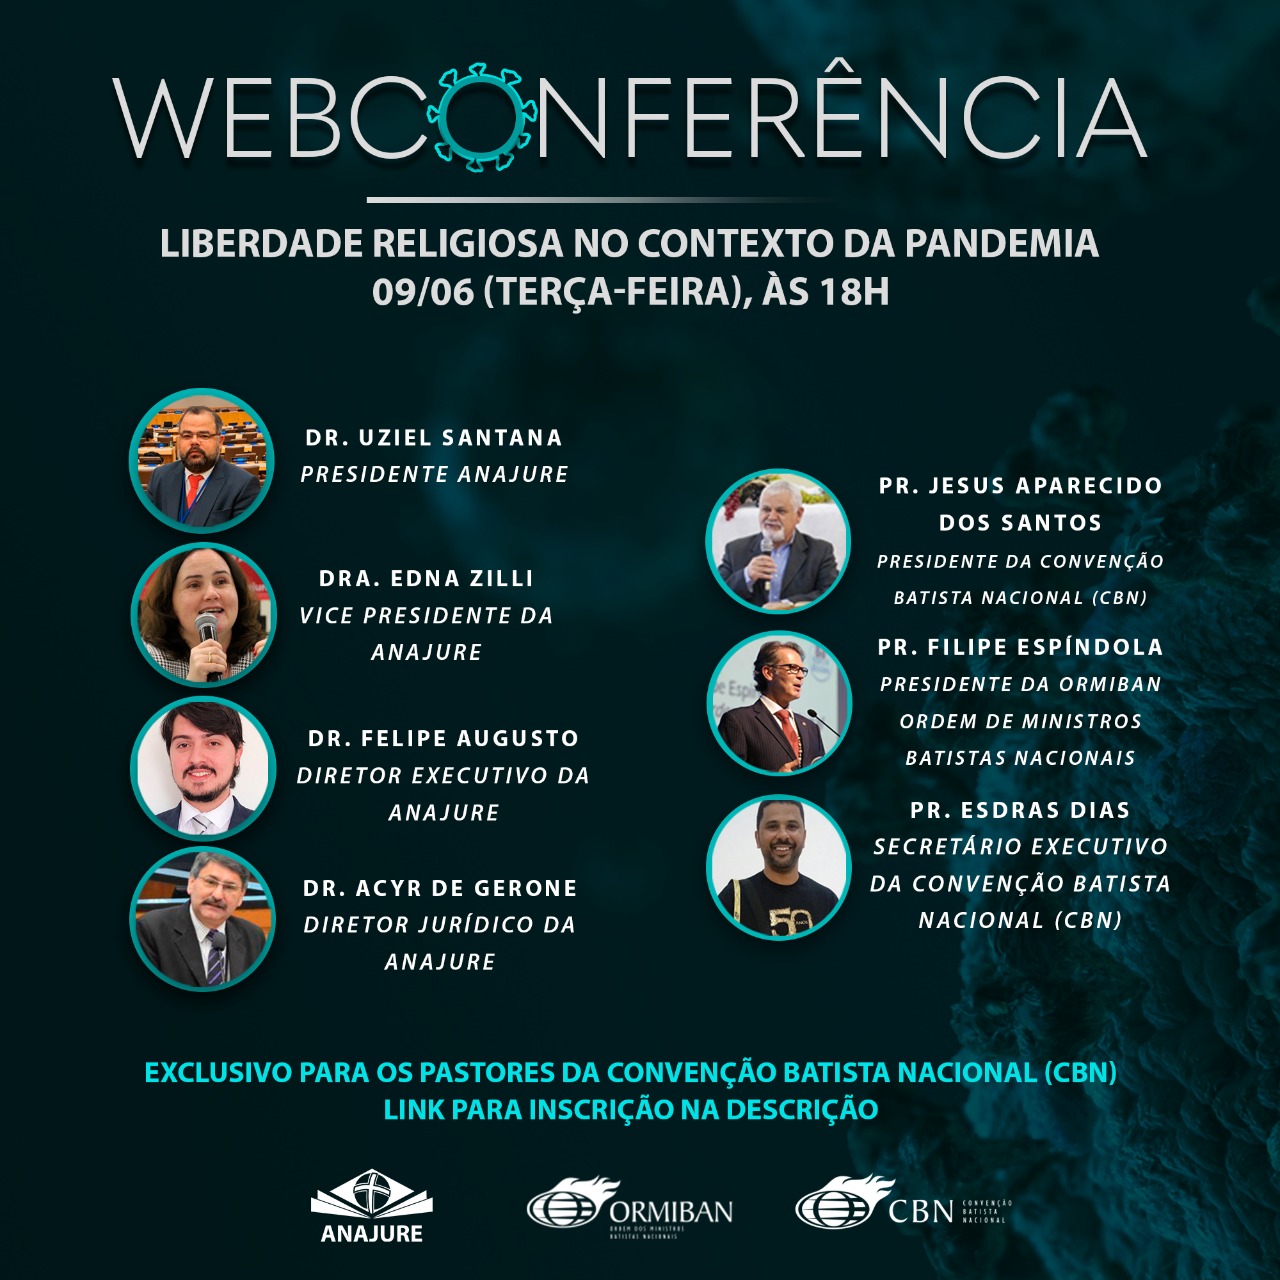 ANAJURE dará orientações jurídicas para pastores da Convenção Batista  Nacional em webconferência sobre liberdade religiosa e pandemia - Anajure